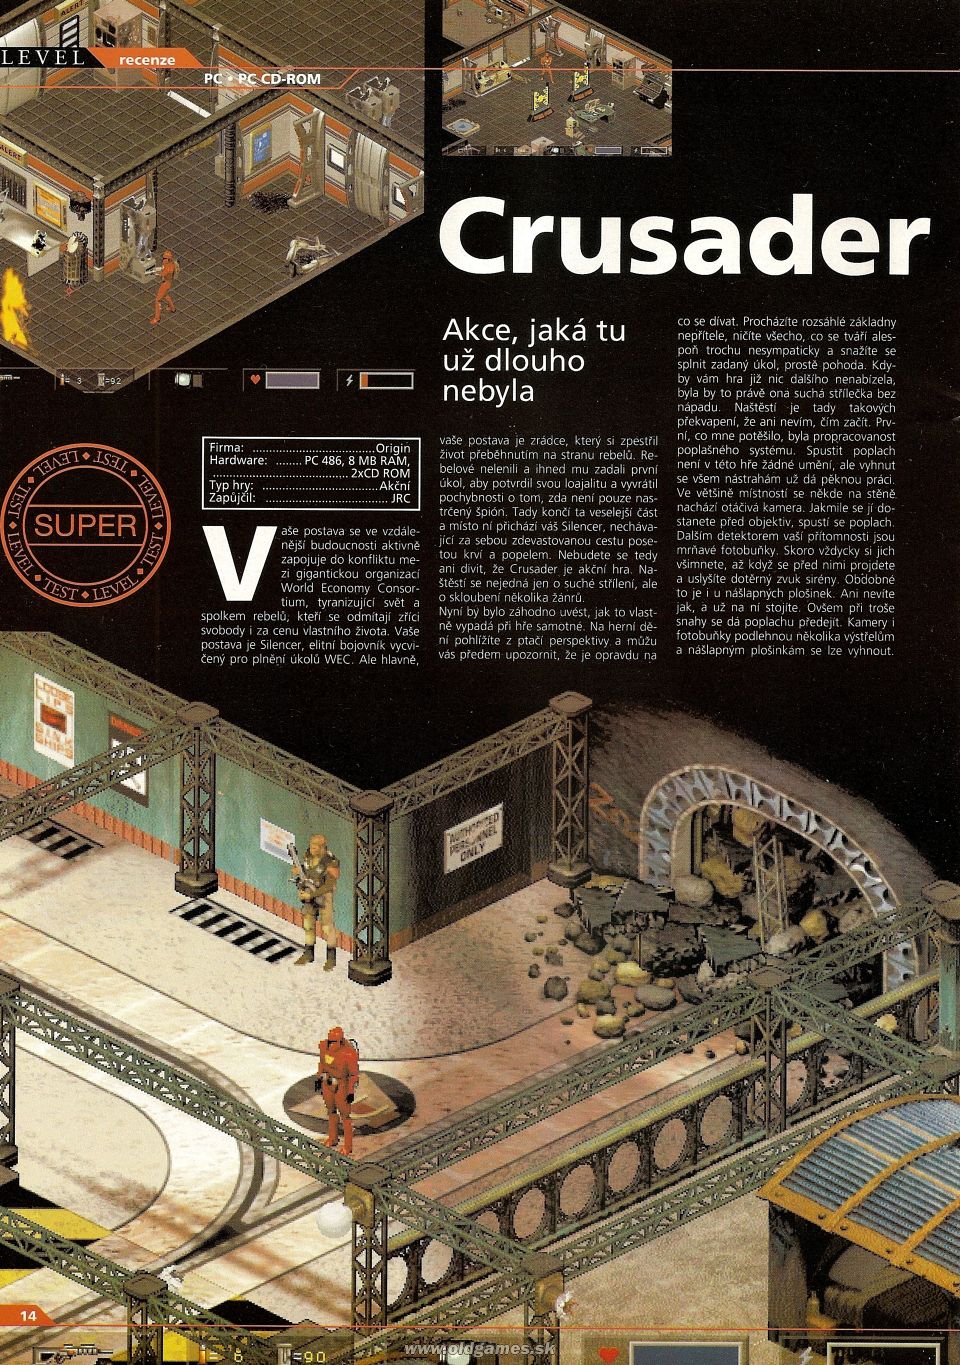 Crusader: No Remorse